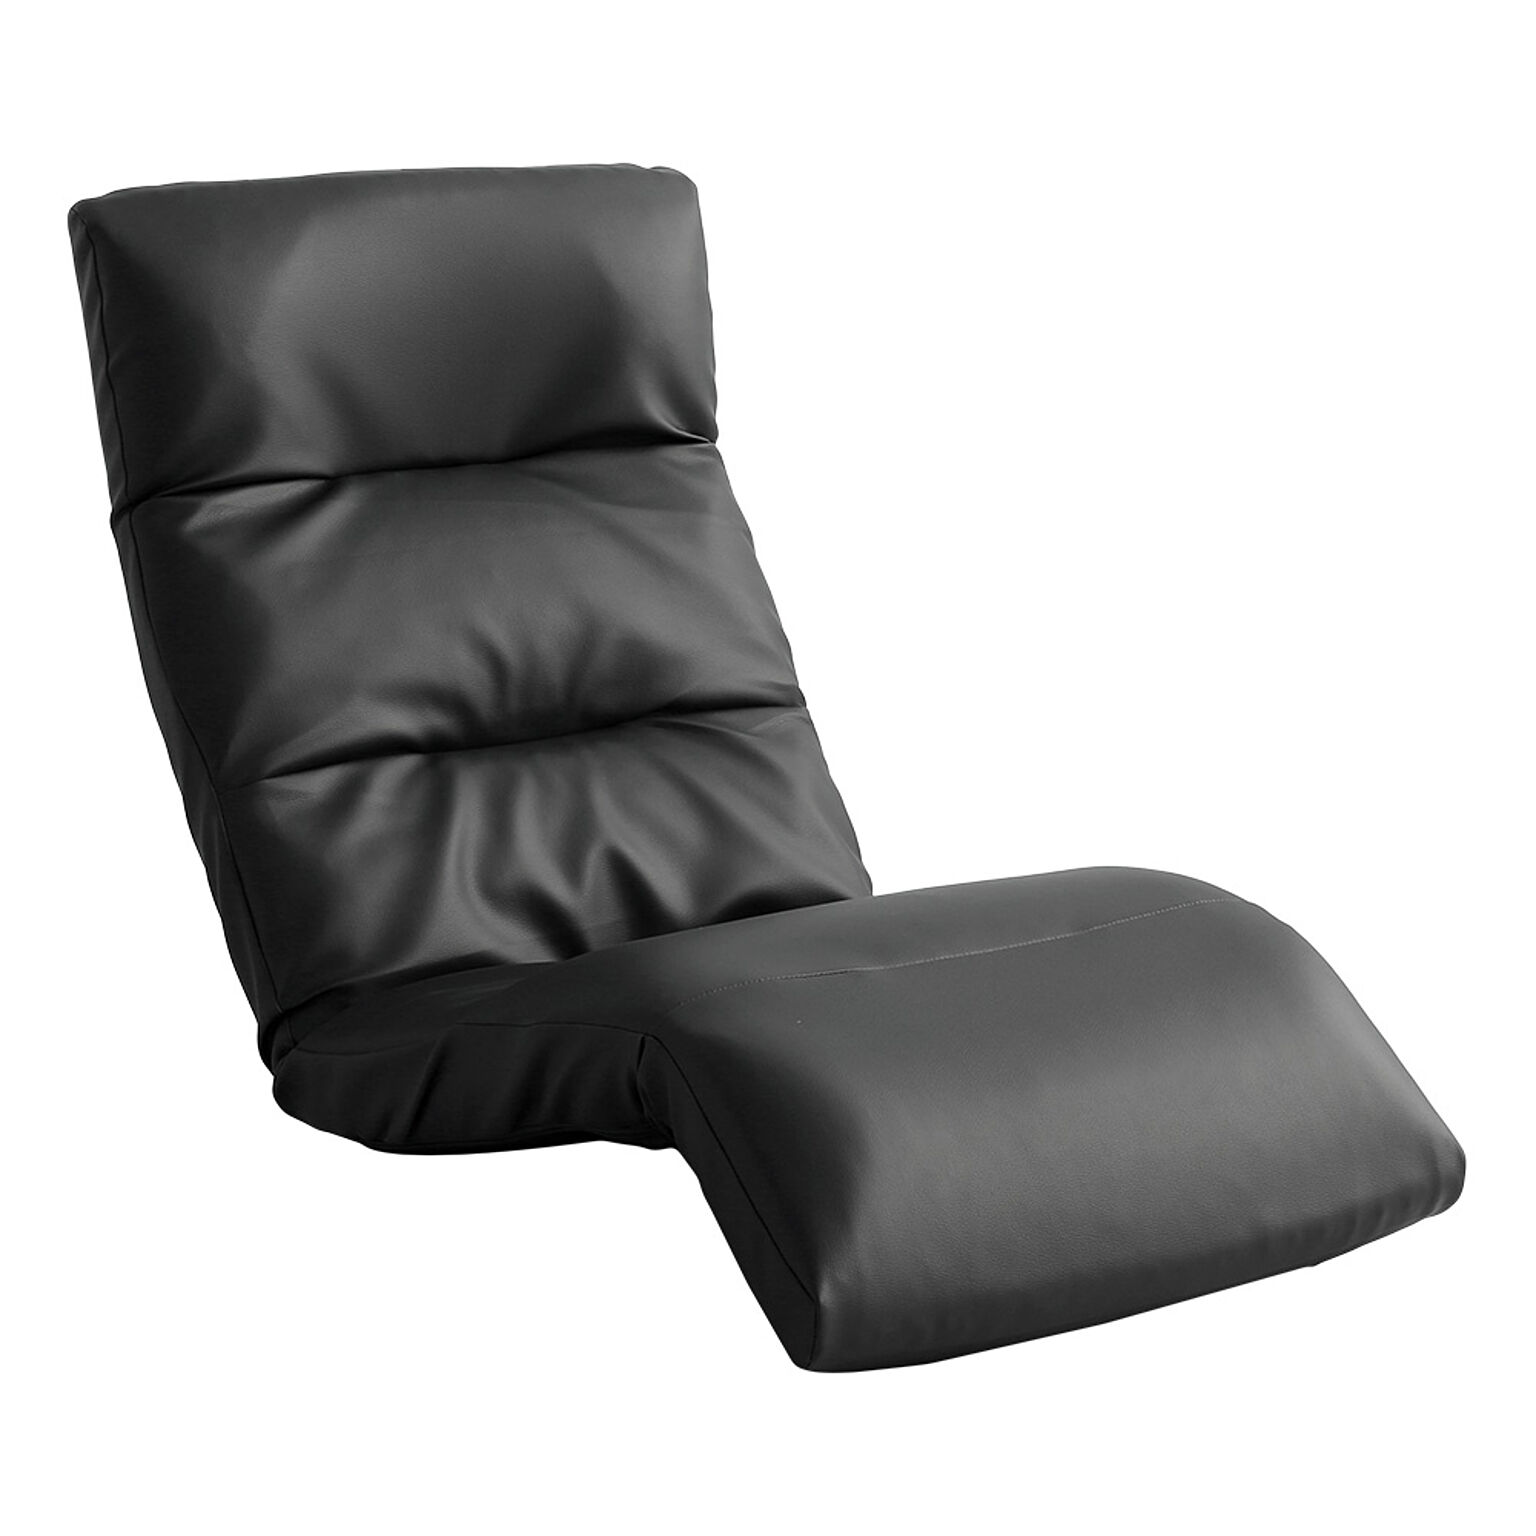 ホームテイスト リクライニング座椅子 Moln-モルン- Down type PVCブラック